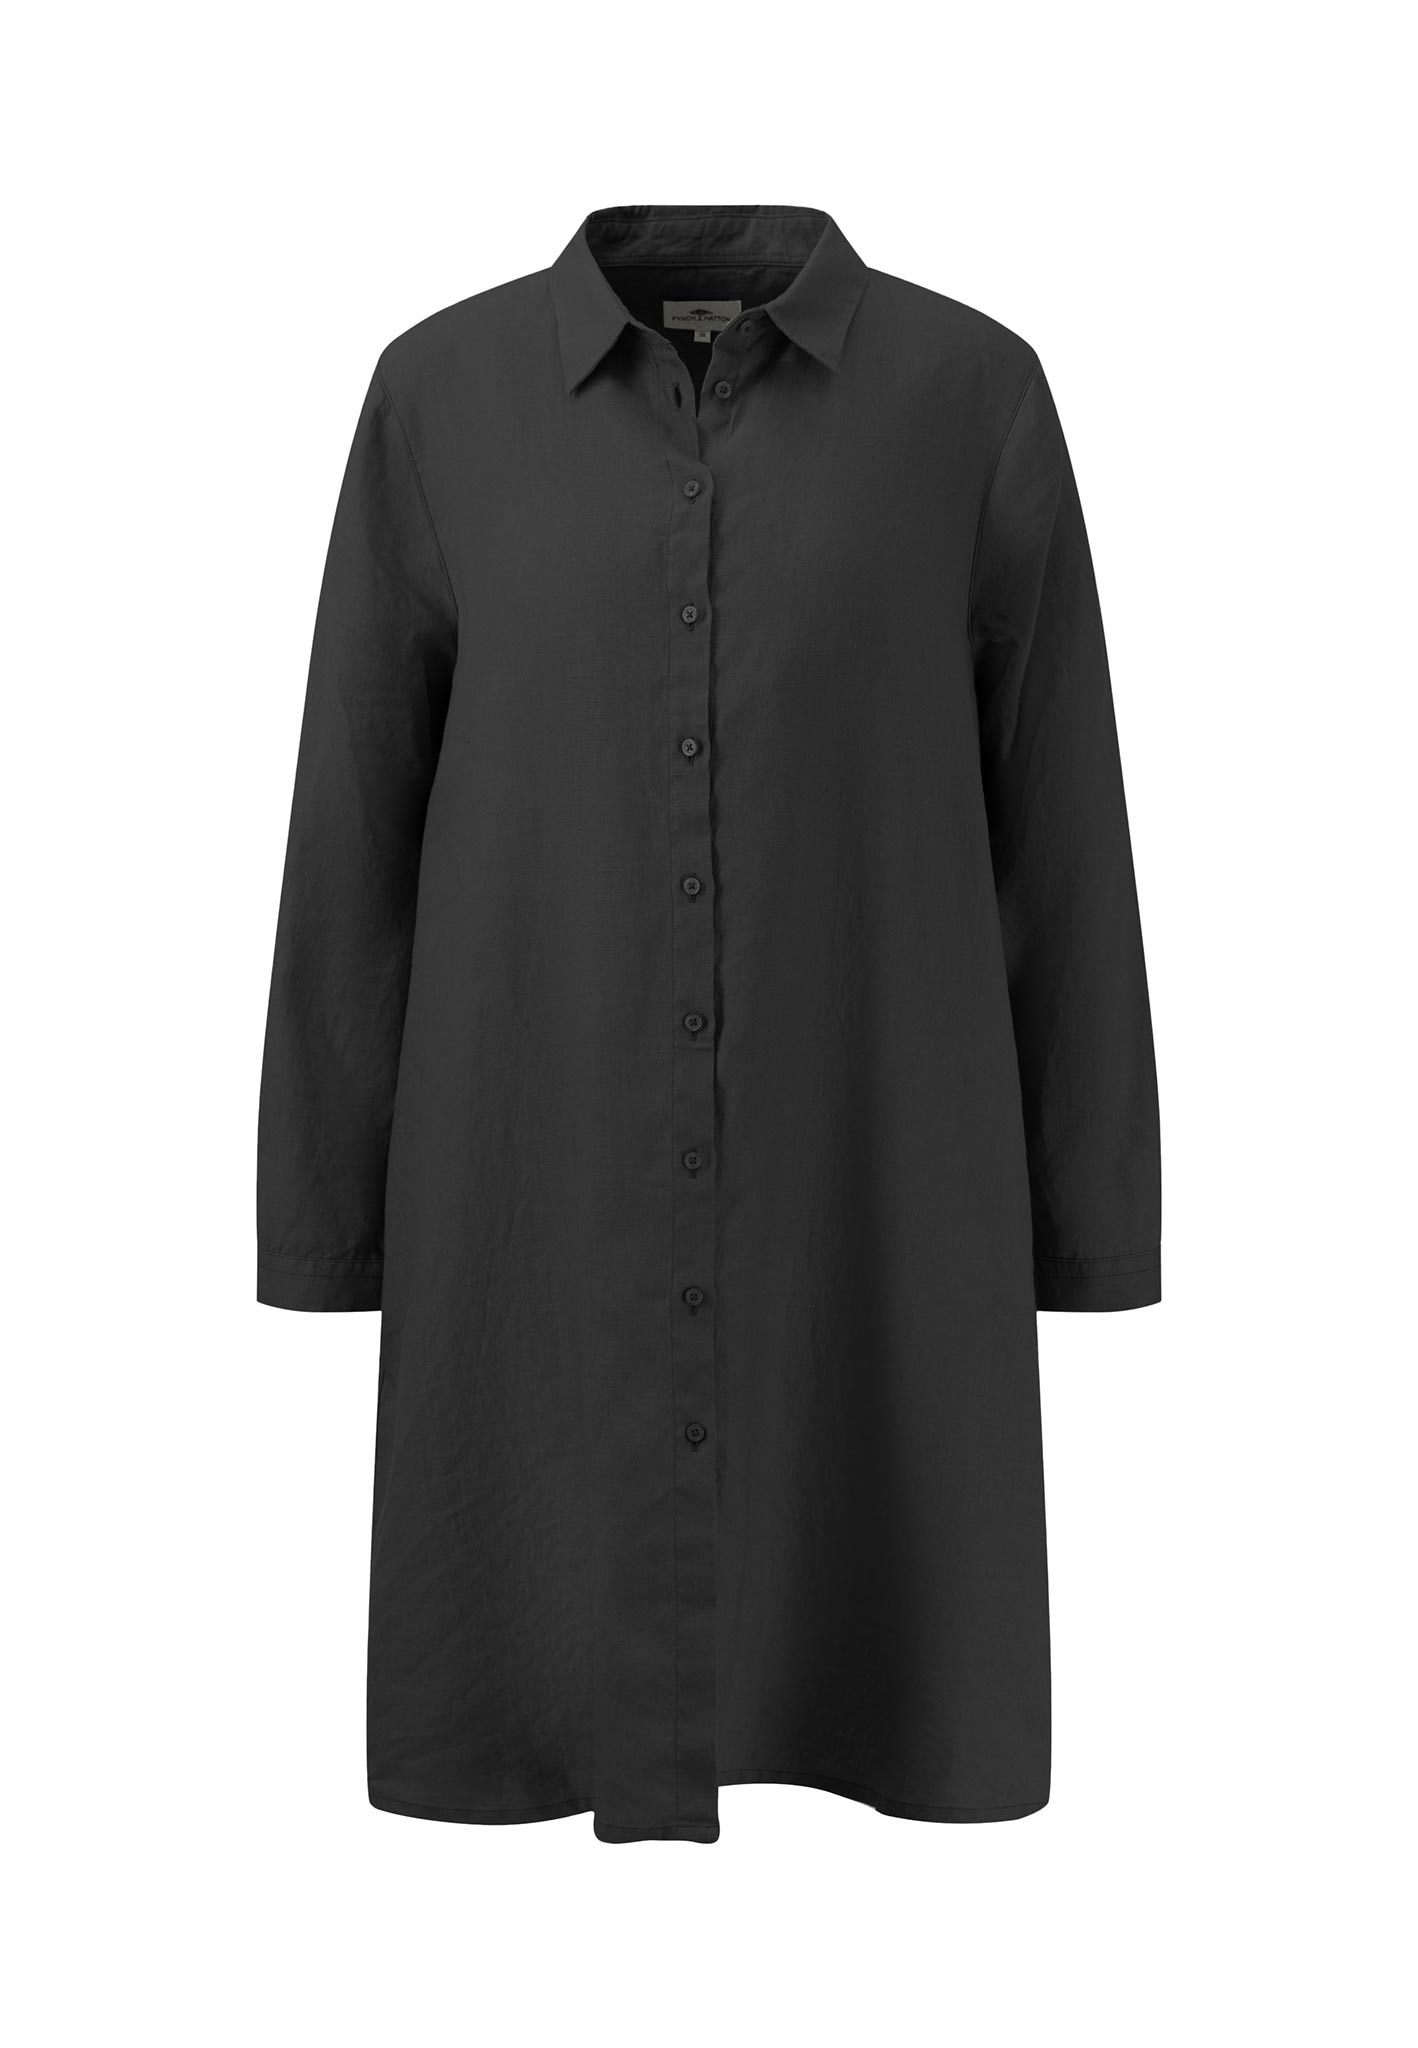 FYNCH-HATTON Blusenkleid, mit Markenlabel